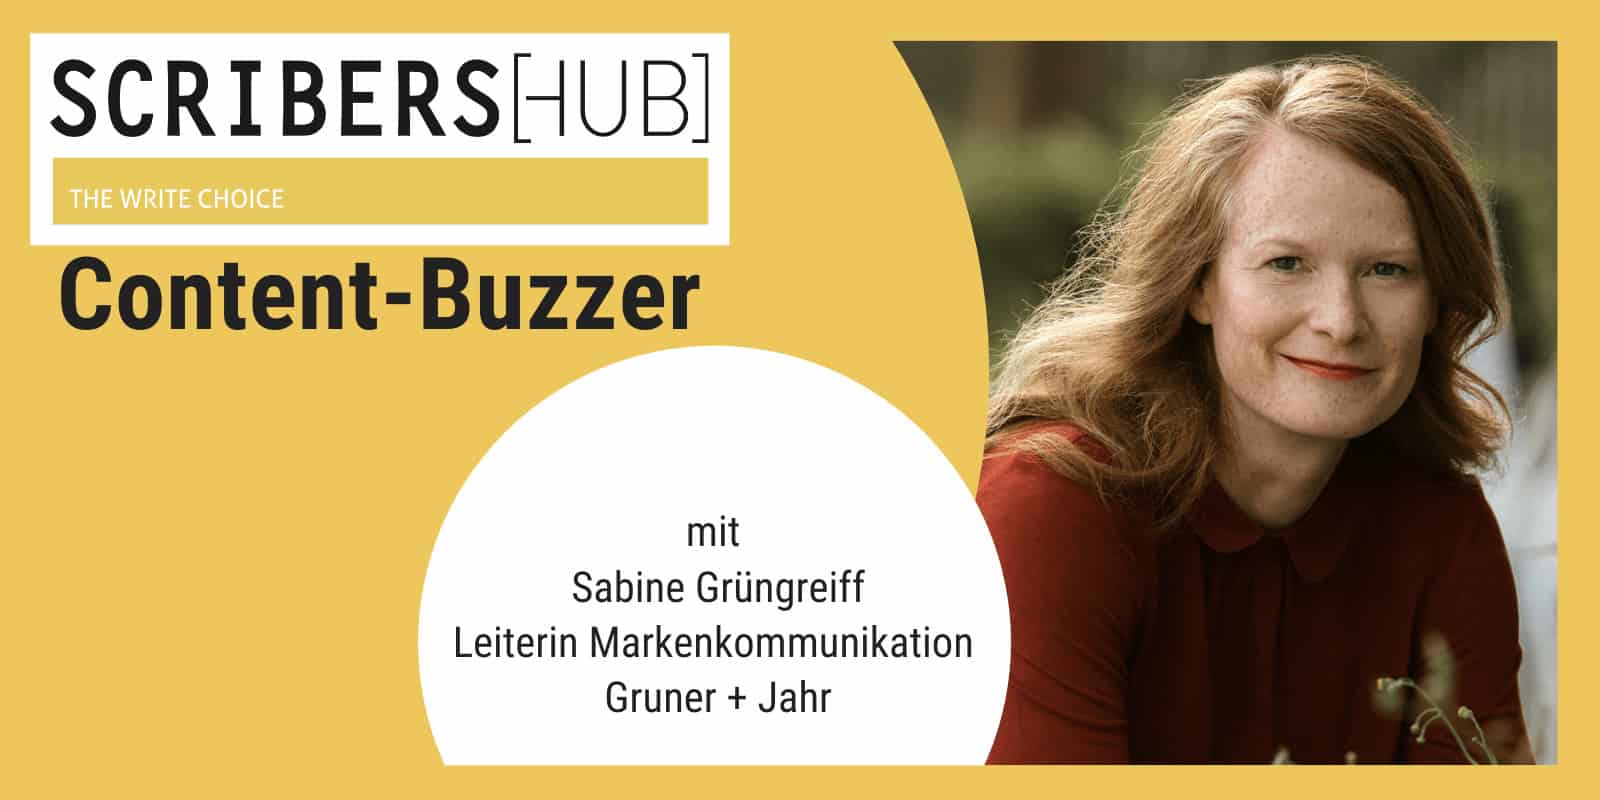 Sabine Grüngreiff im Scribershub Content Buzzer